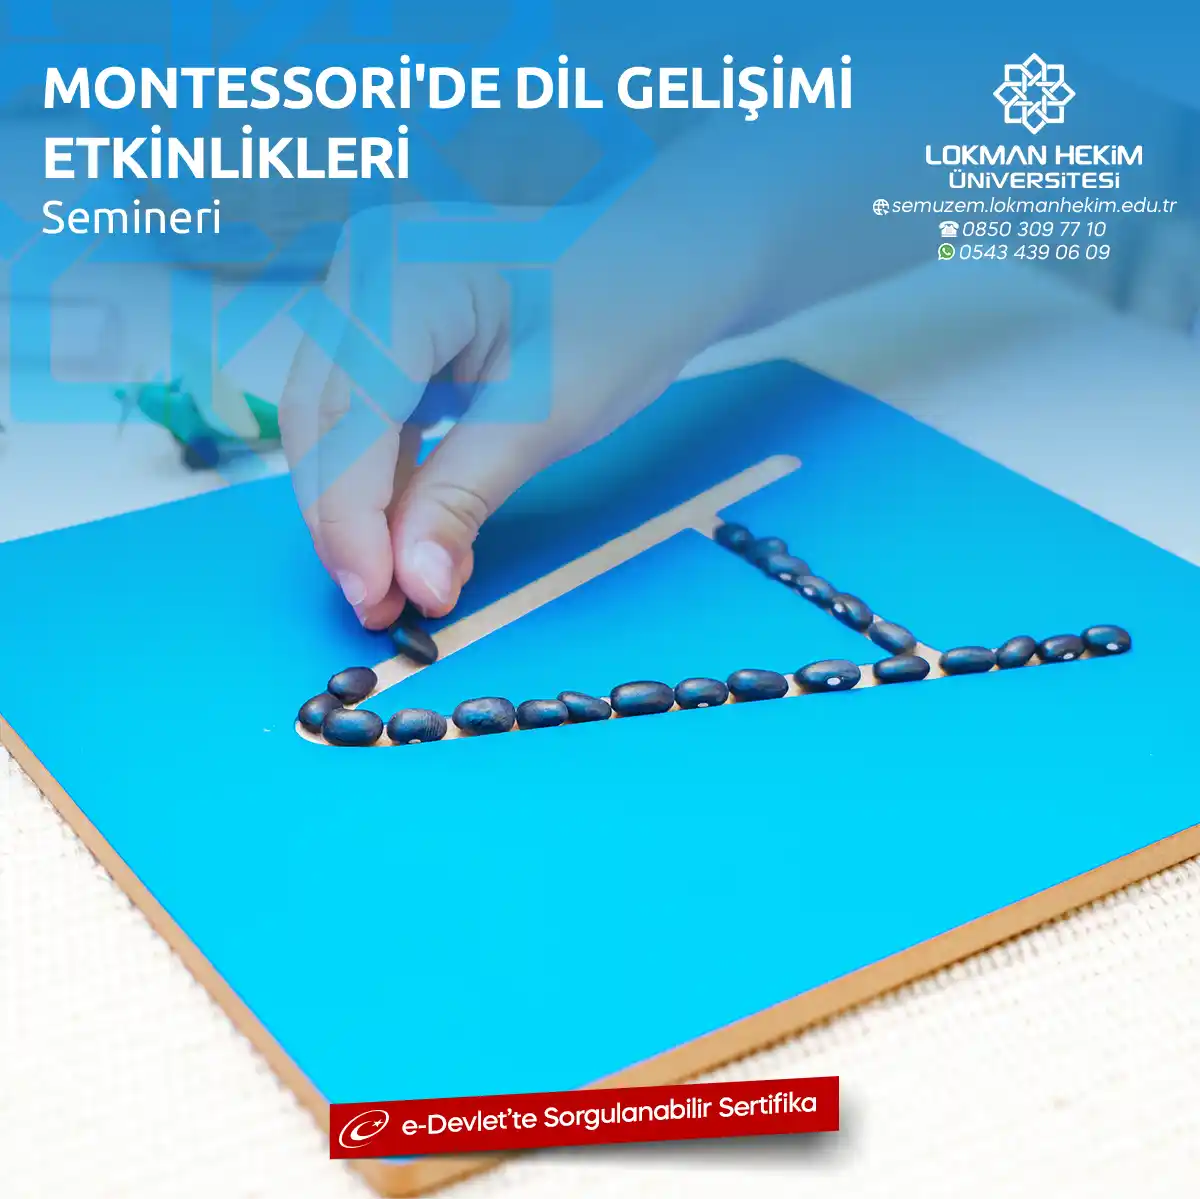 Montessori'de Dil Gelişimi Etkinlikleri Semineri